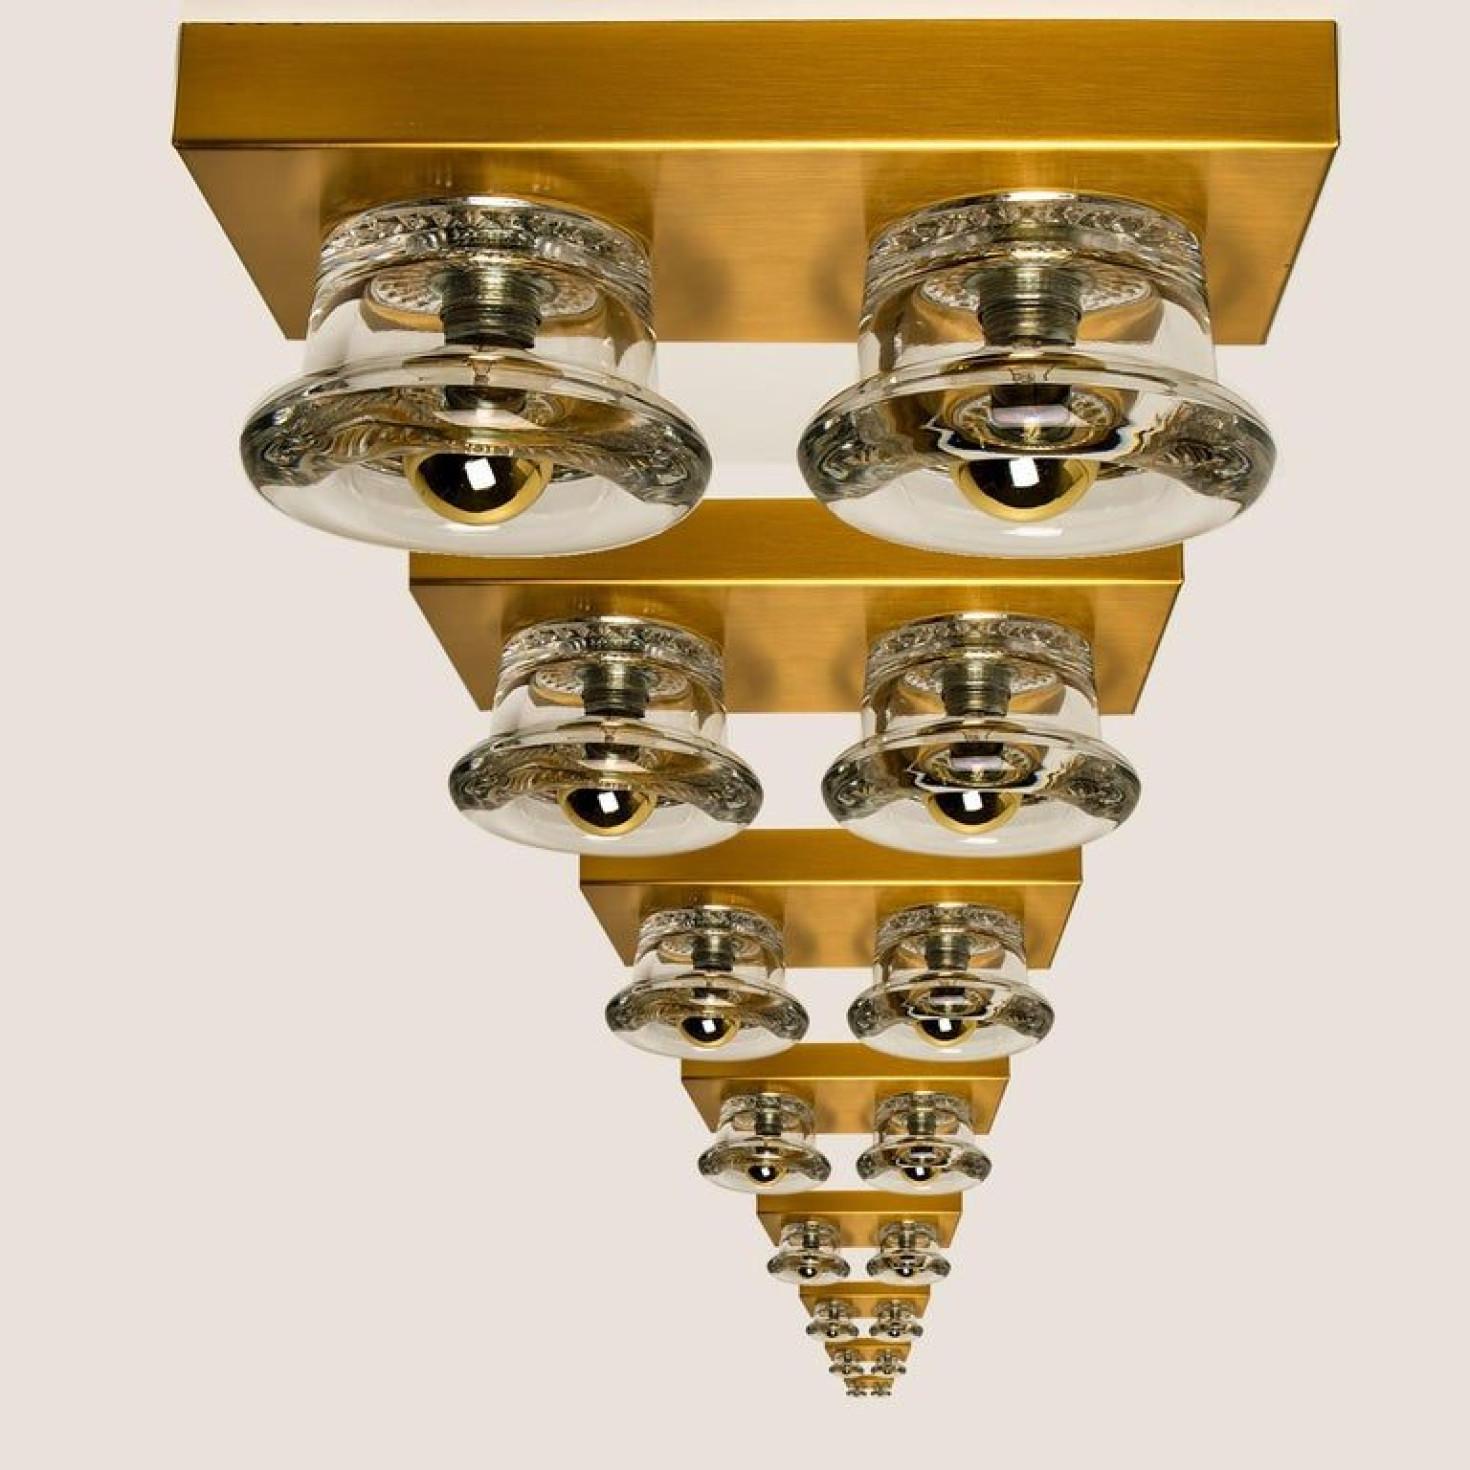 1 des 8 appliques murales ou encastrées en verre originales Lampes Cosack, Allemagne, années 1970

Applique originale moderniste des années 1970 avec quatre éléments lumineux en verre. Cette lampe a été conçue et produite par Design-Light, l'un des